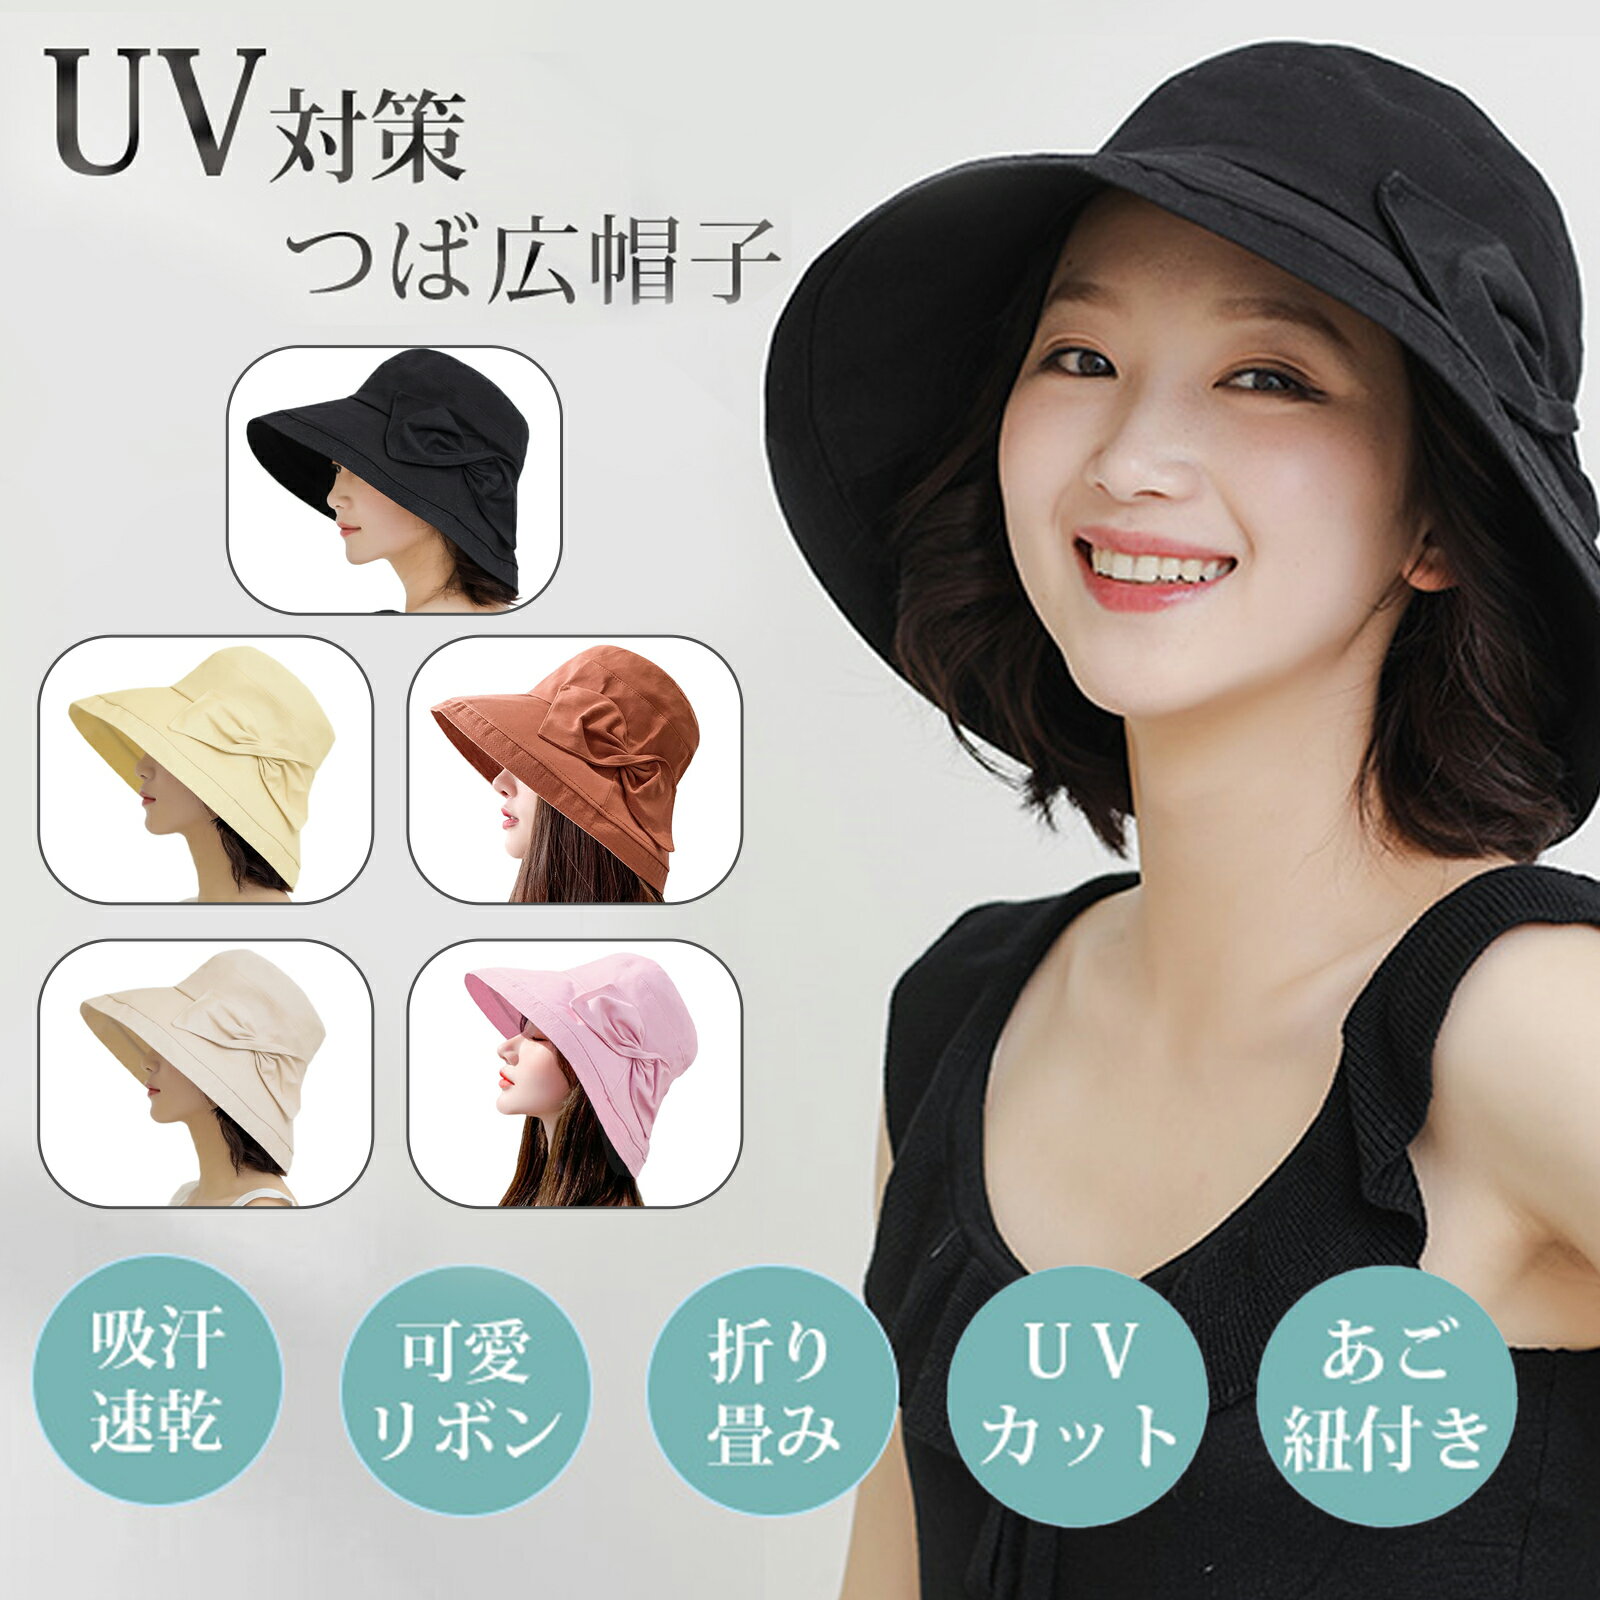 絶対日焼けしない帽子が欲しい！UVカットでおしゃれなつば広帽子で人気なのはどれ？